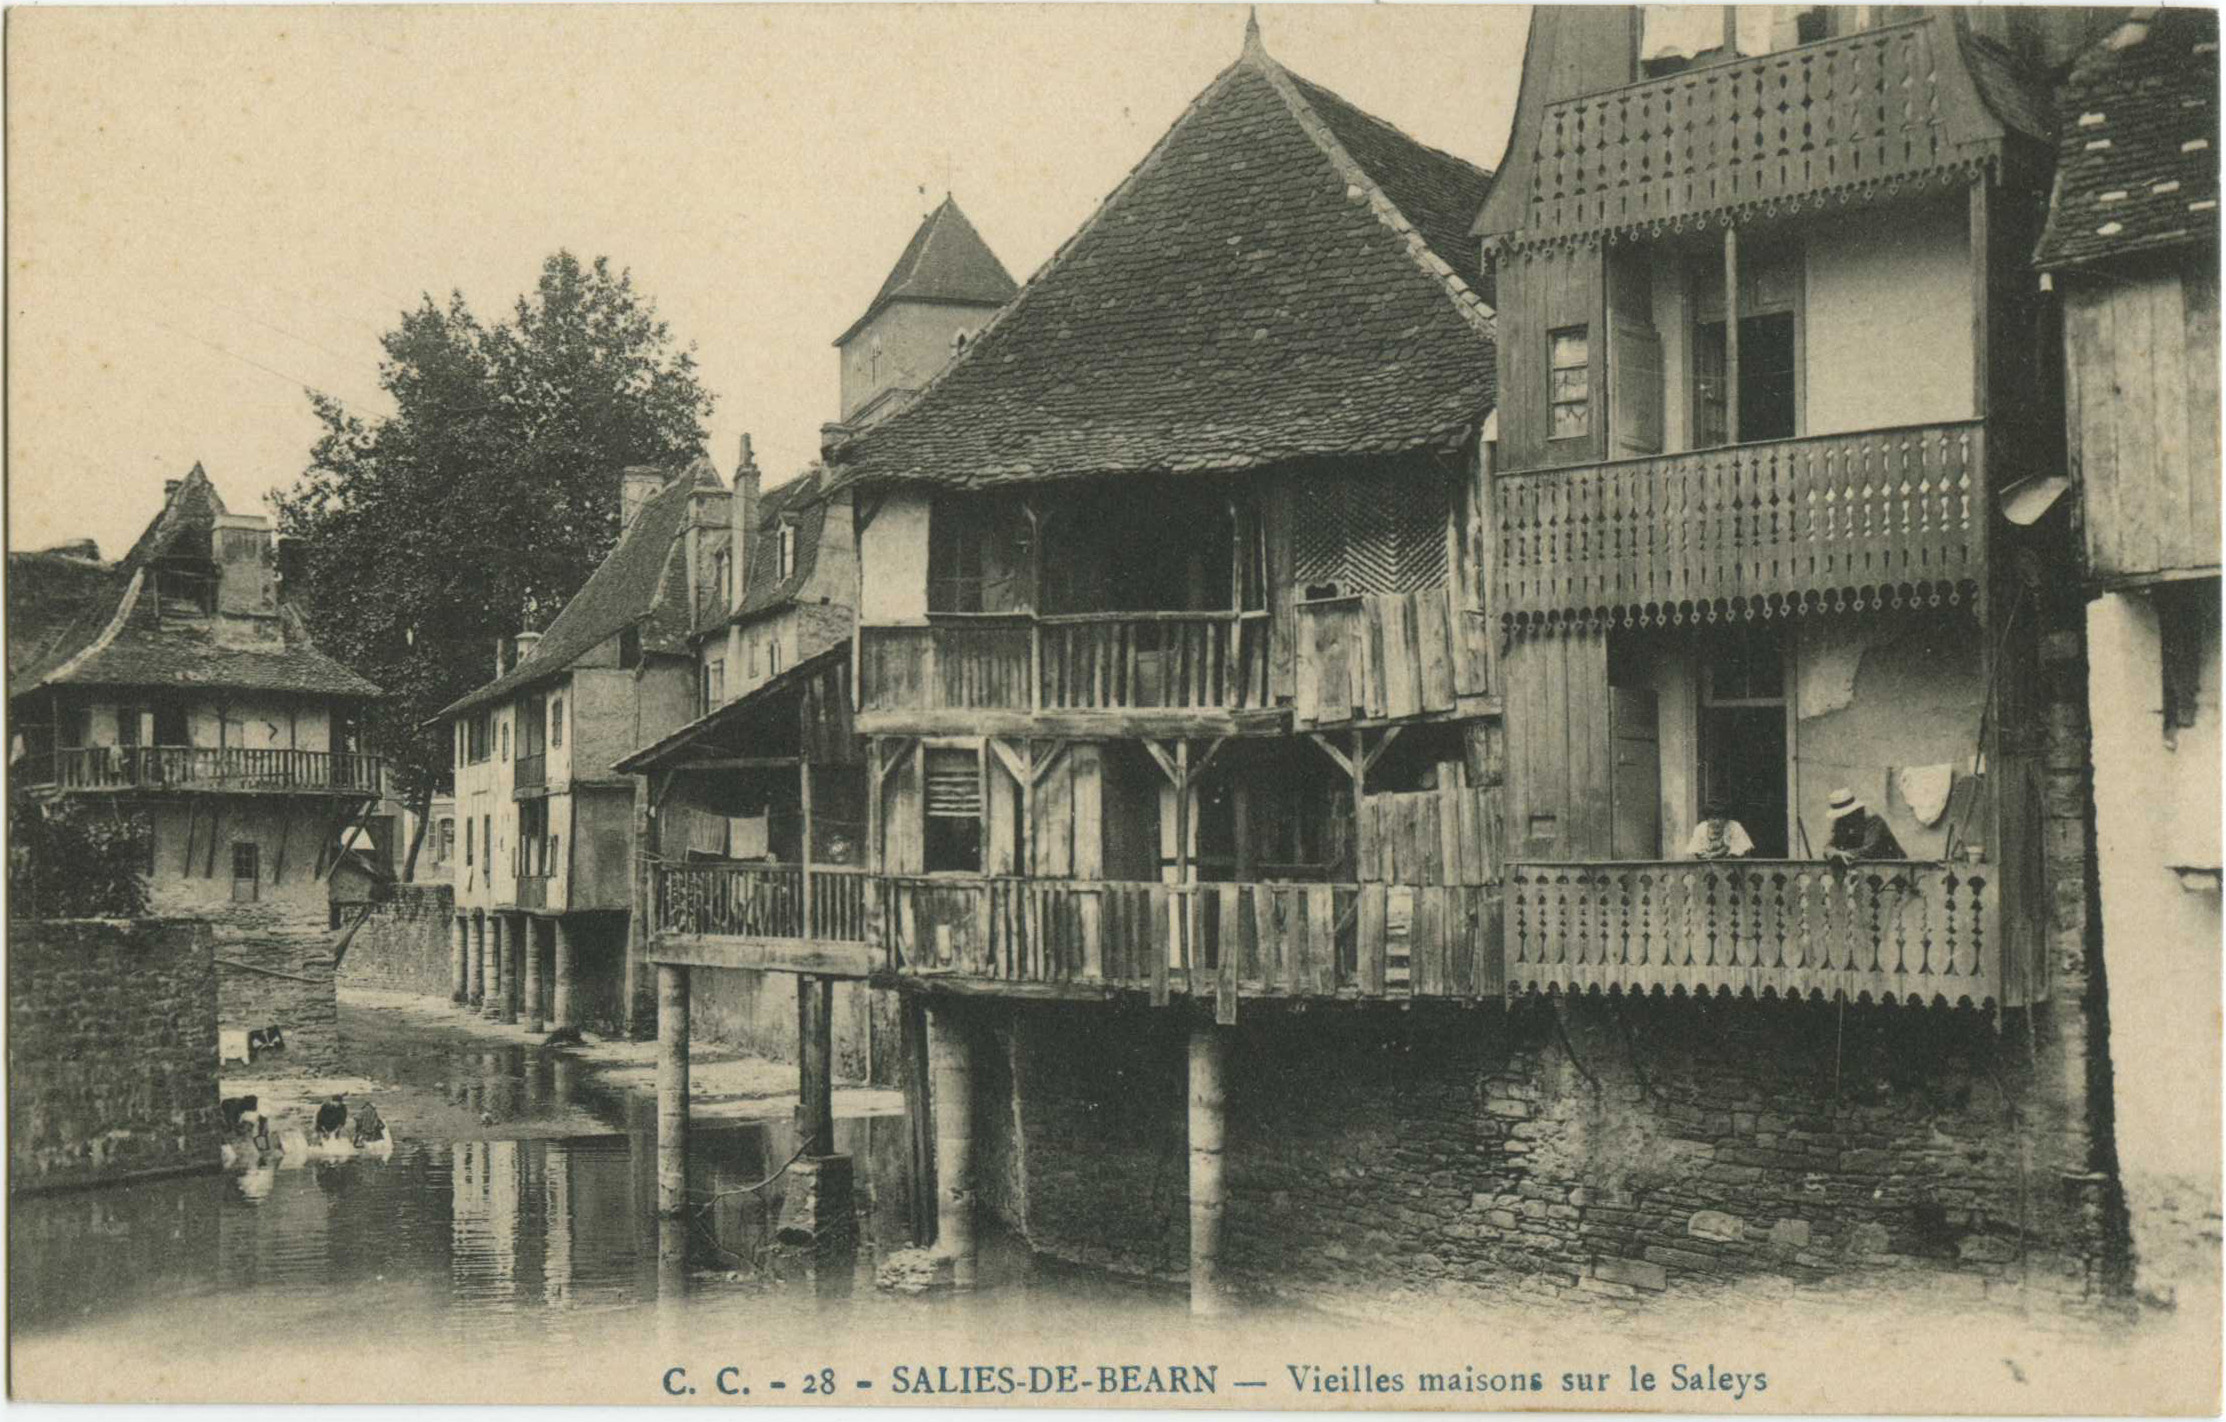 Salies-de-Béarn - Vieilles maisons sur le Saleys